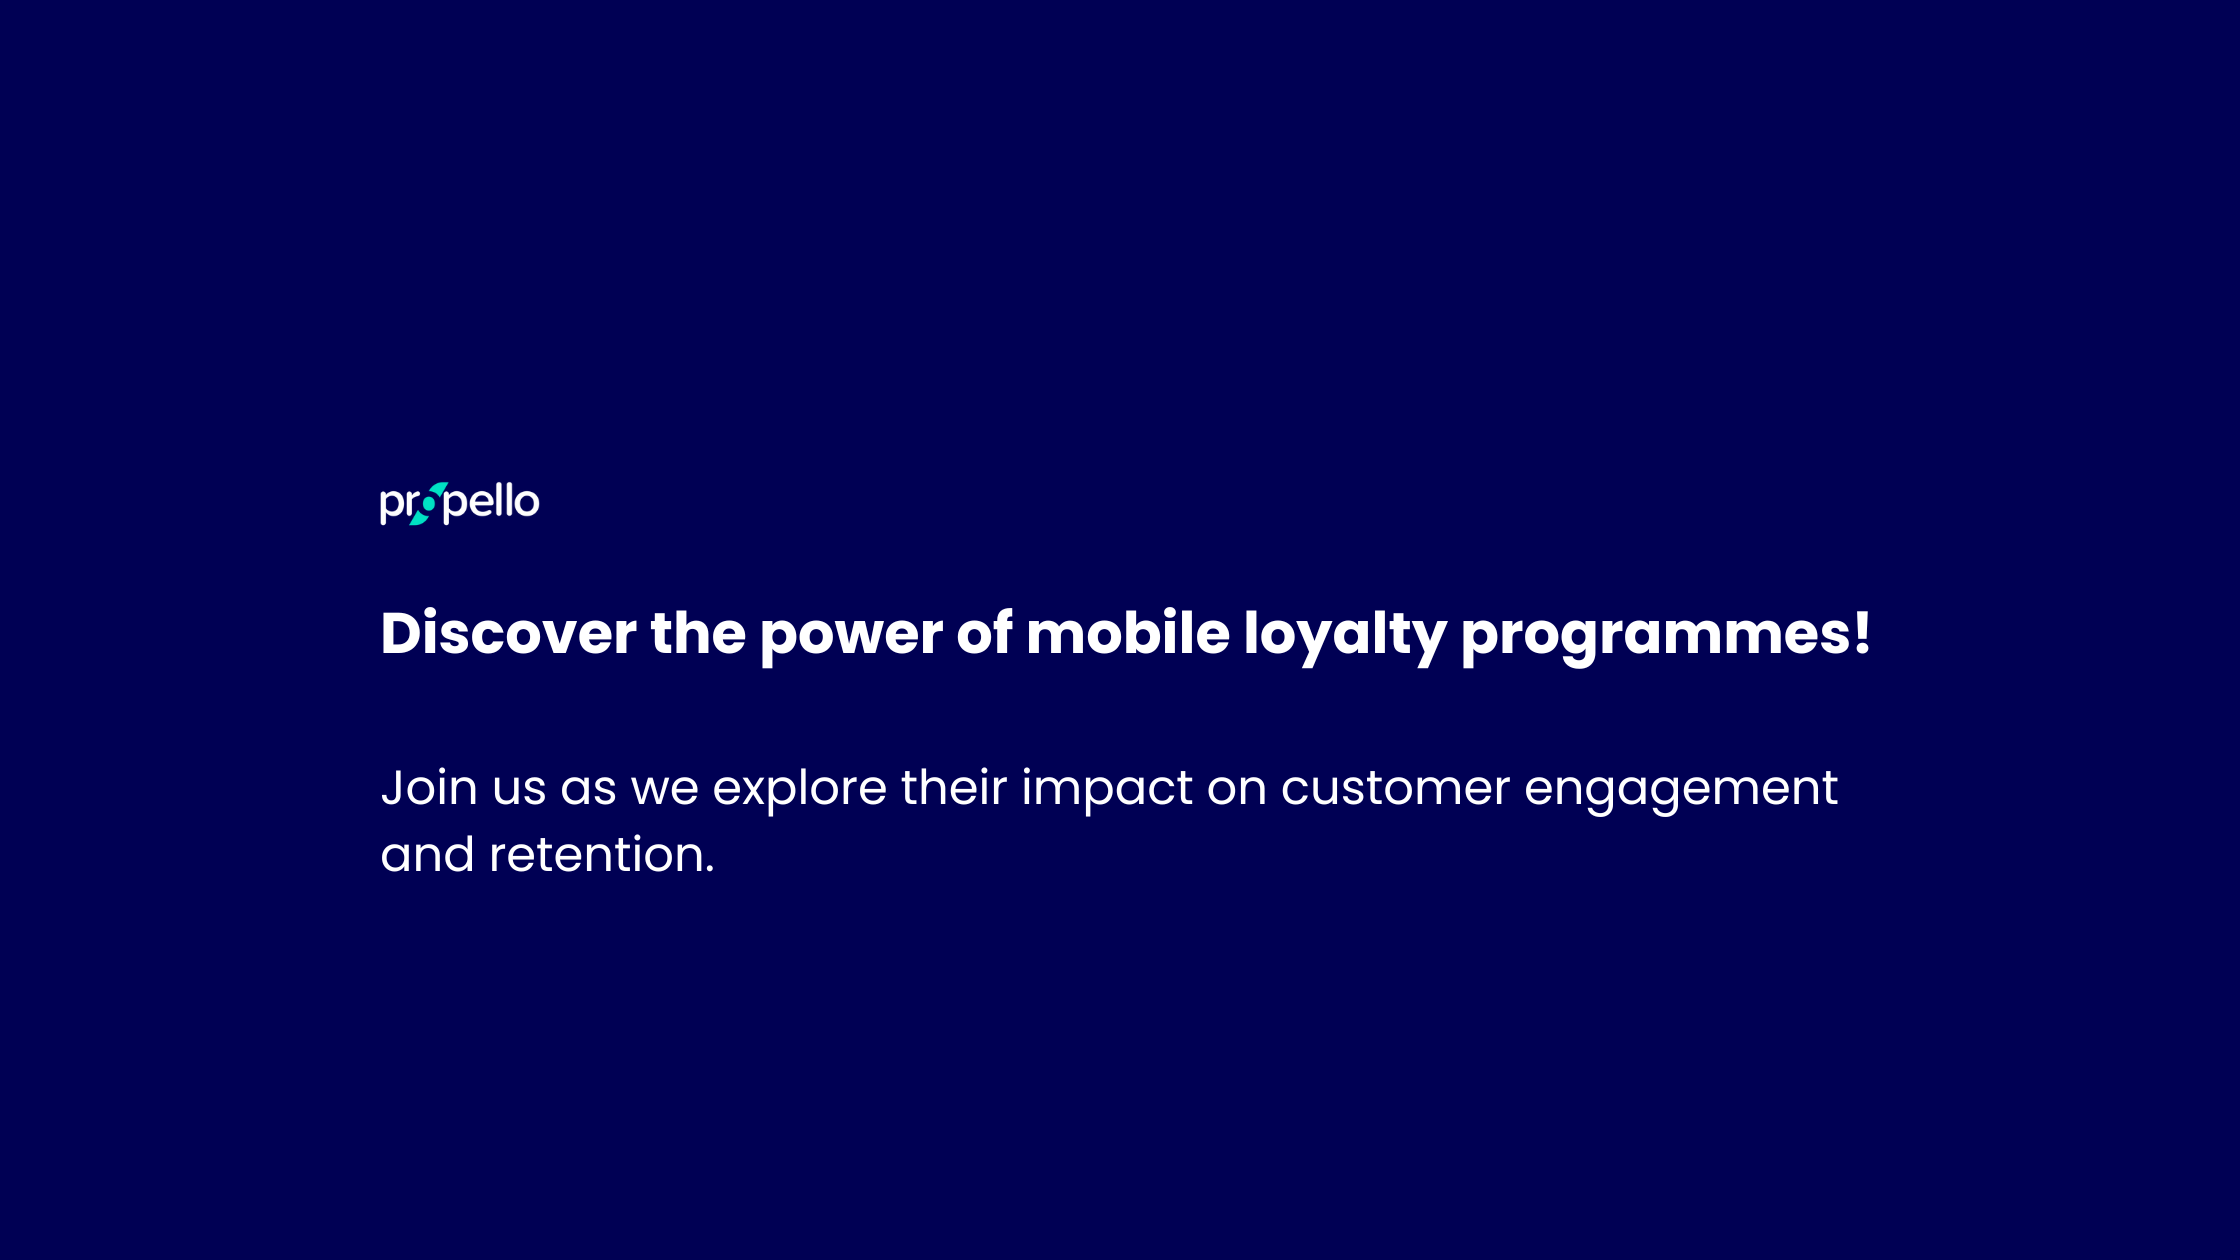 Mobile loyalty programmes